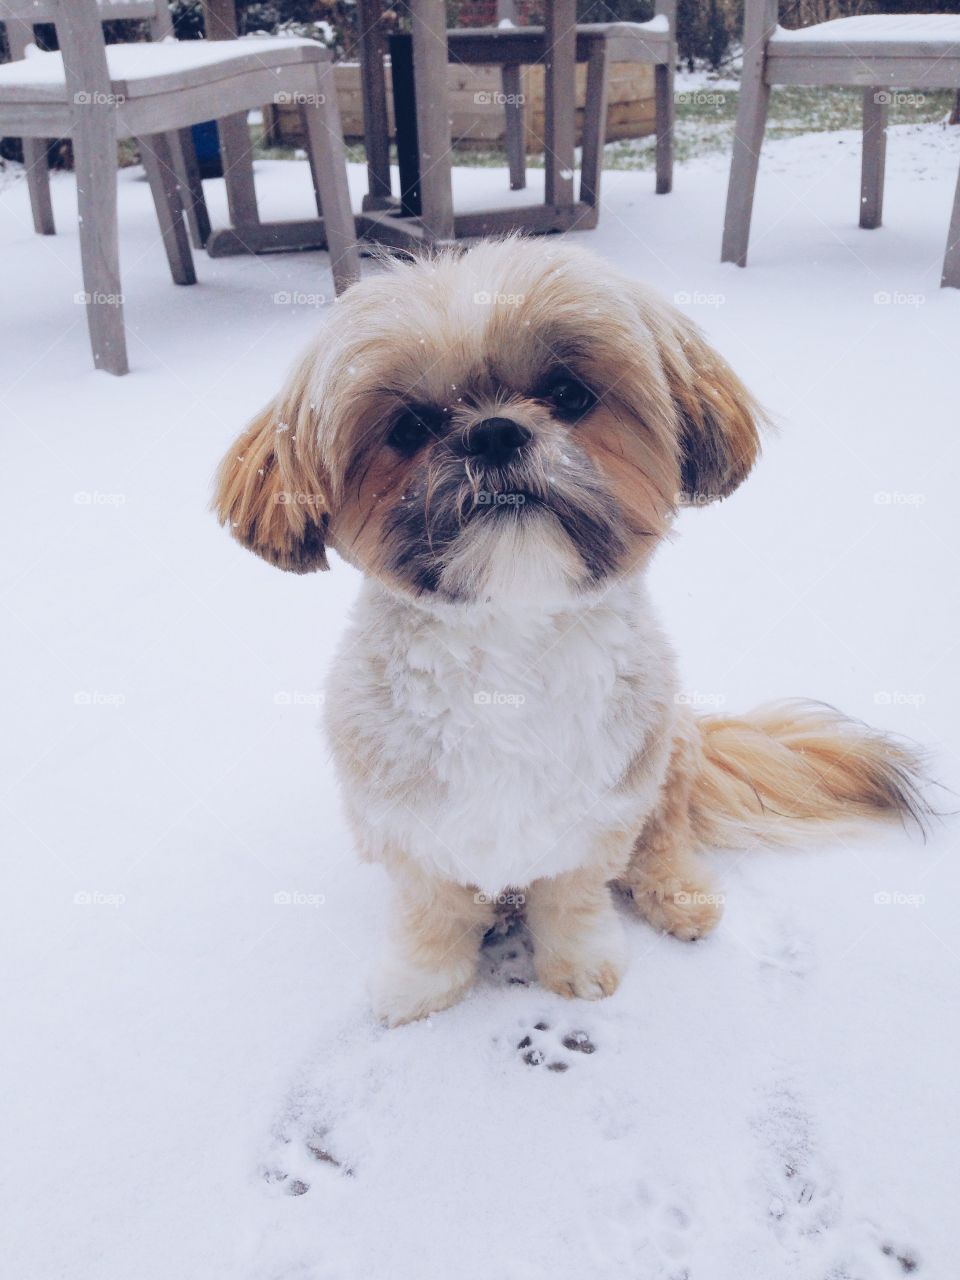 Pups first snow